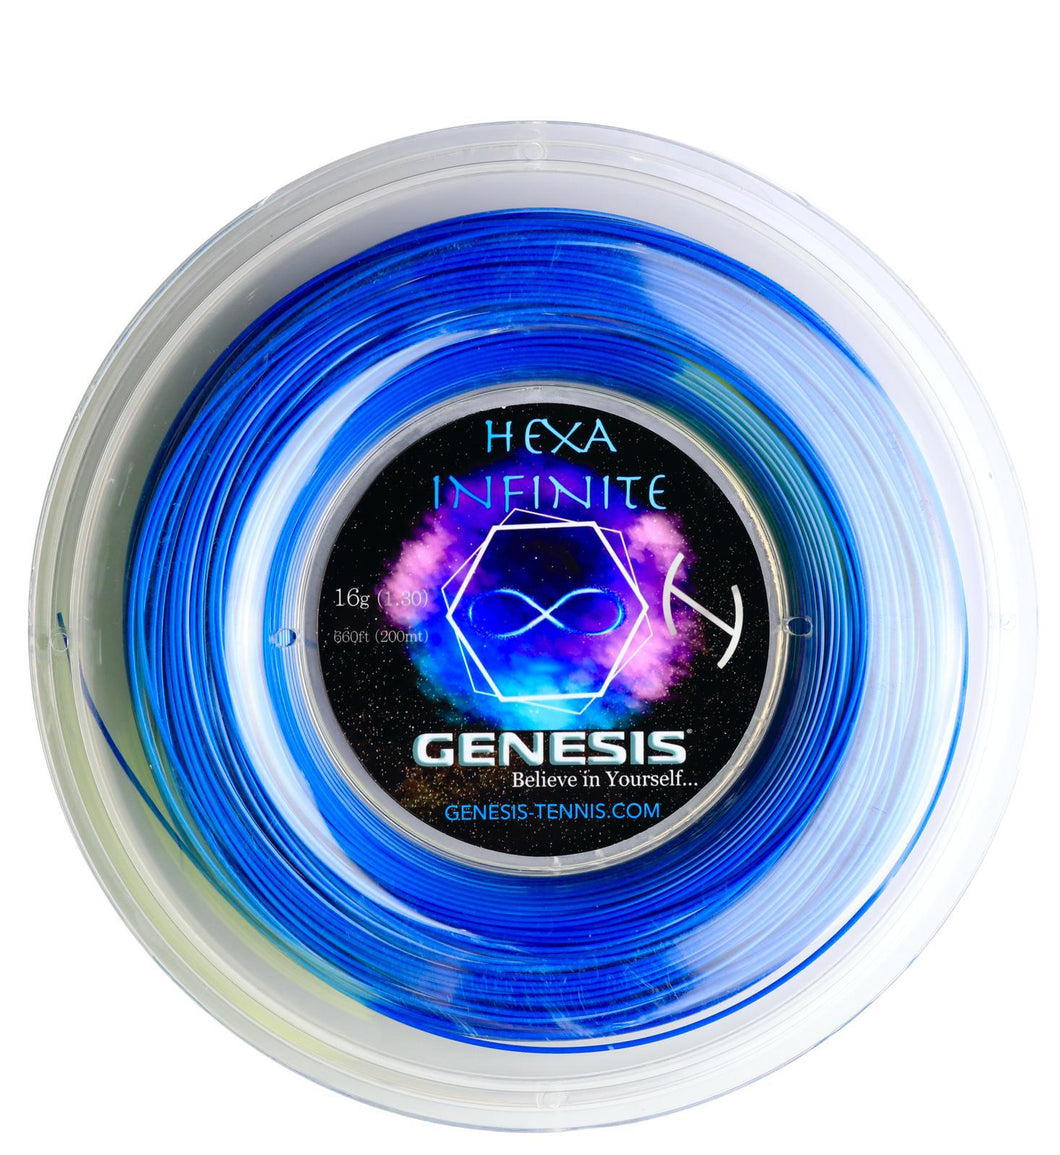 GENESIS HEXA INFINITE 200MT/660FT TENNIS STRING REEL 16G (1.30)